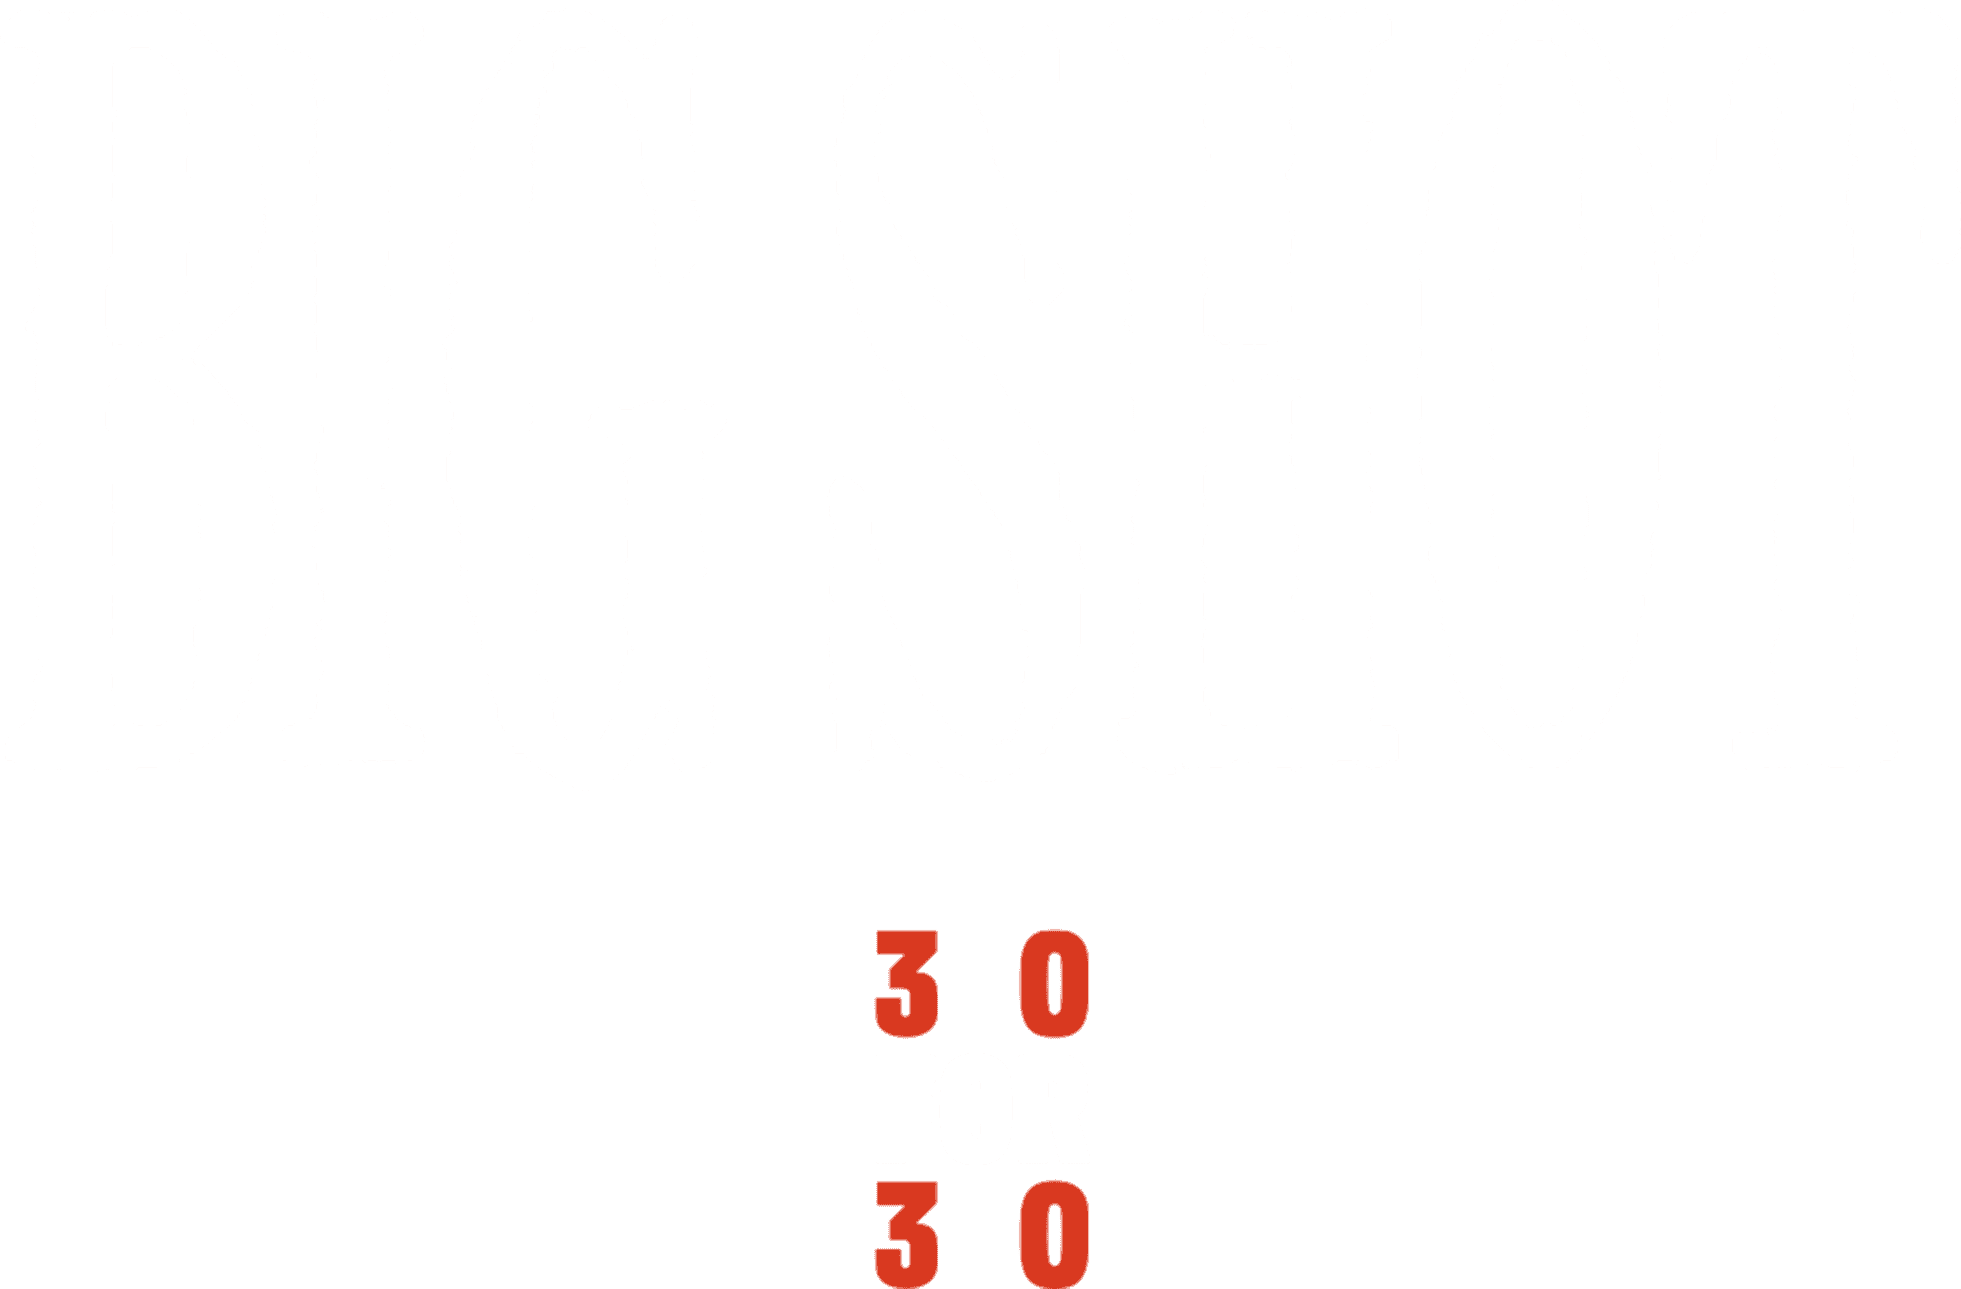 Big Shot logo